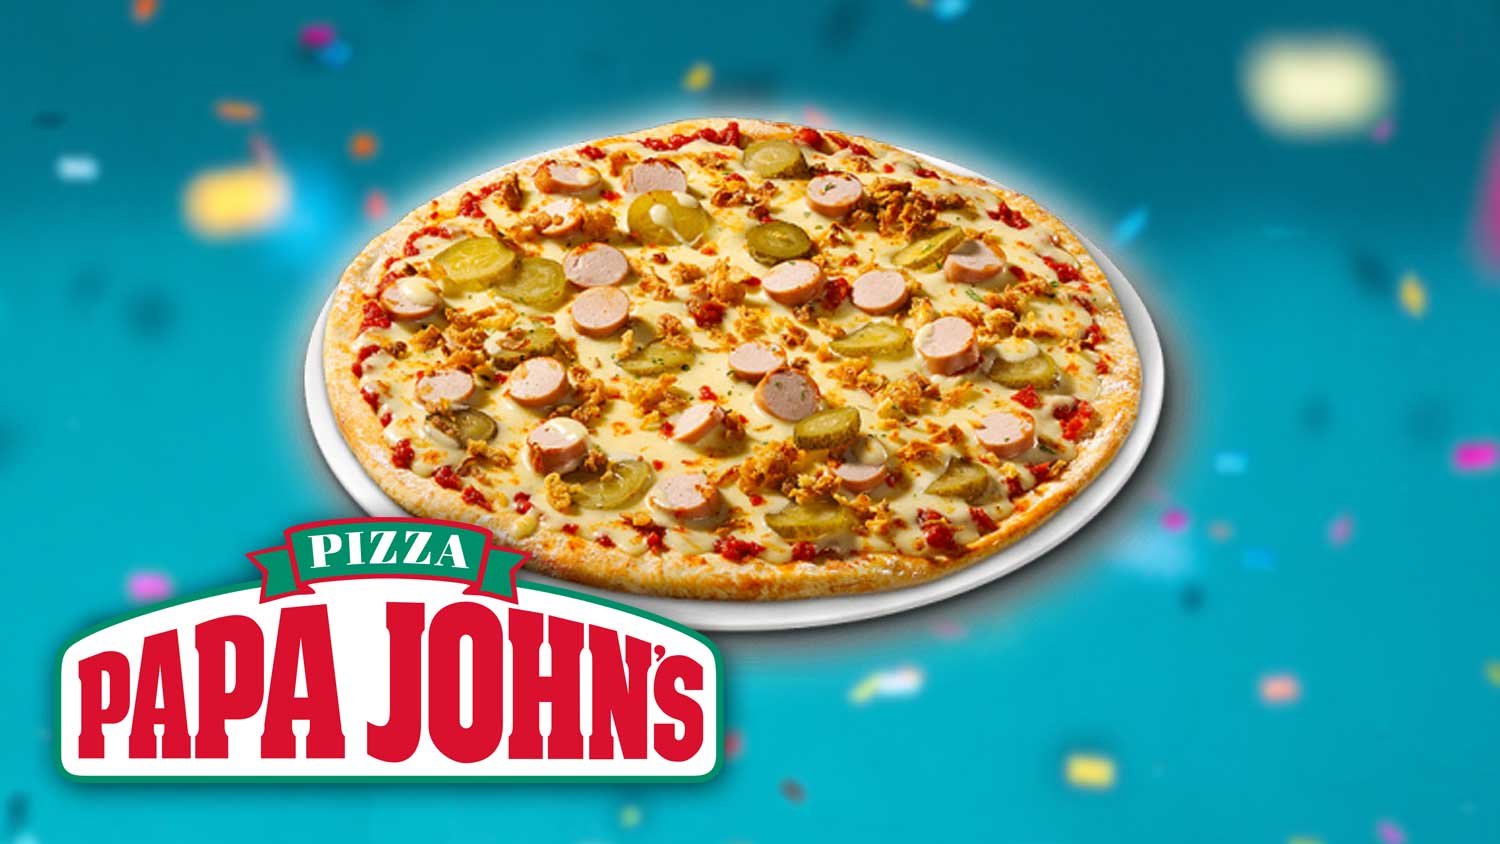 Папа джонс игра. Пицца хот дог папа Джонс. Тонкая пицца папа Джонс. Папа Джонс пицца лого. Любимая Папина пицца папа Джонс.